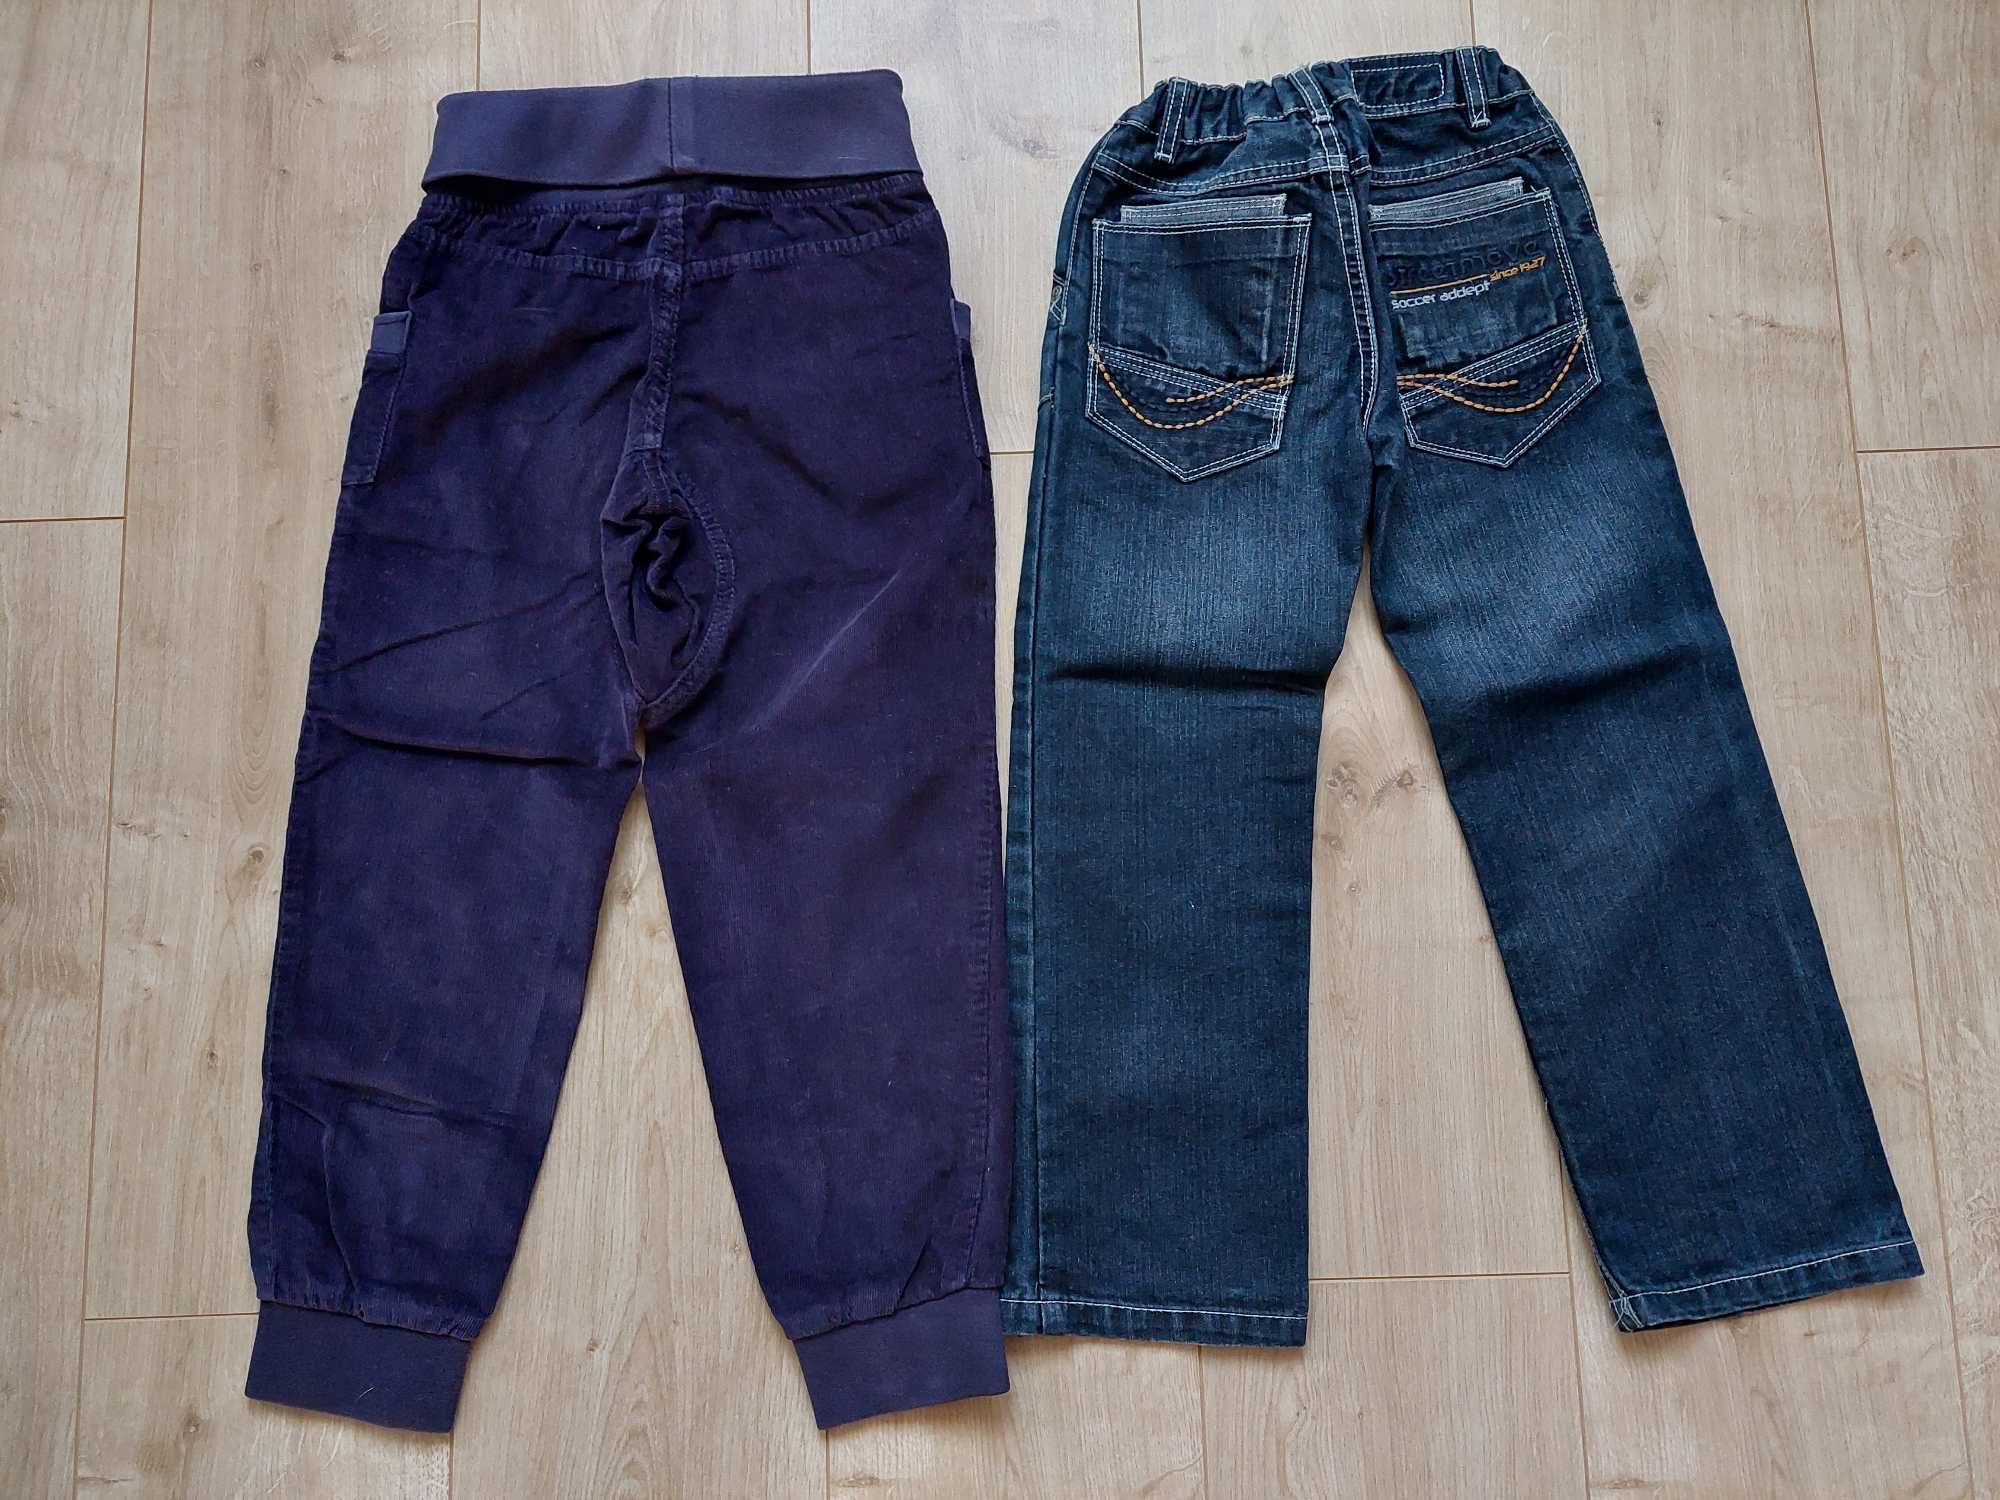 Spodnie chłopięce jeansowe,sztruksowe,116,Lupilu,extenso,bdb